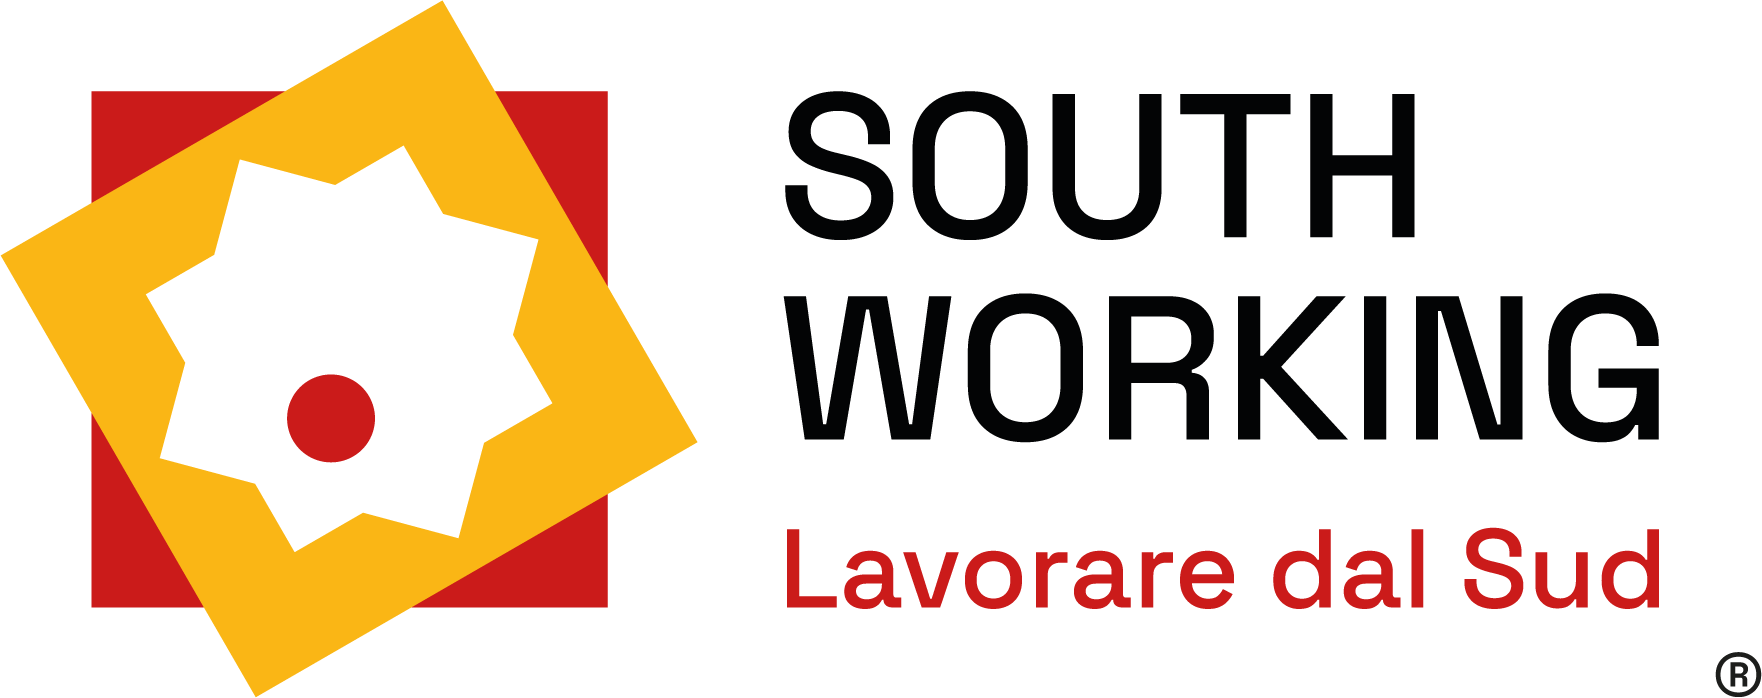 South Working – Lavorare dal Sud: la nostra visione